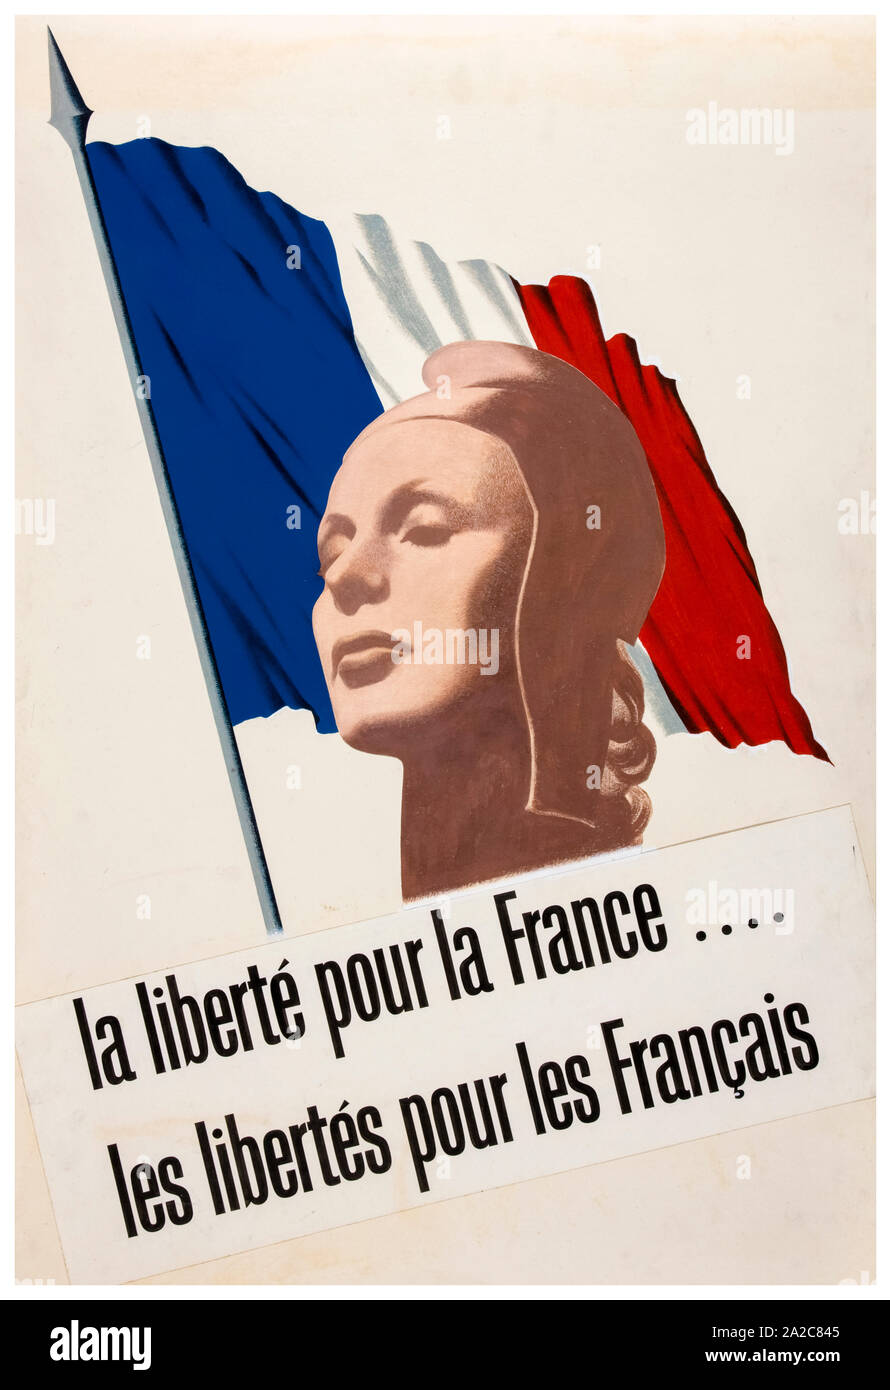 Britische, WW2, Einheit der Kraft, der Inter-alliierten Zusammenarbeit, La Liberté la France pour, Les Libert s pour les Français, (Freiheit für Deutschland, Freiheit für die Franzosen), Poster, 1939-1946 Stockfoto